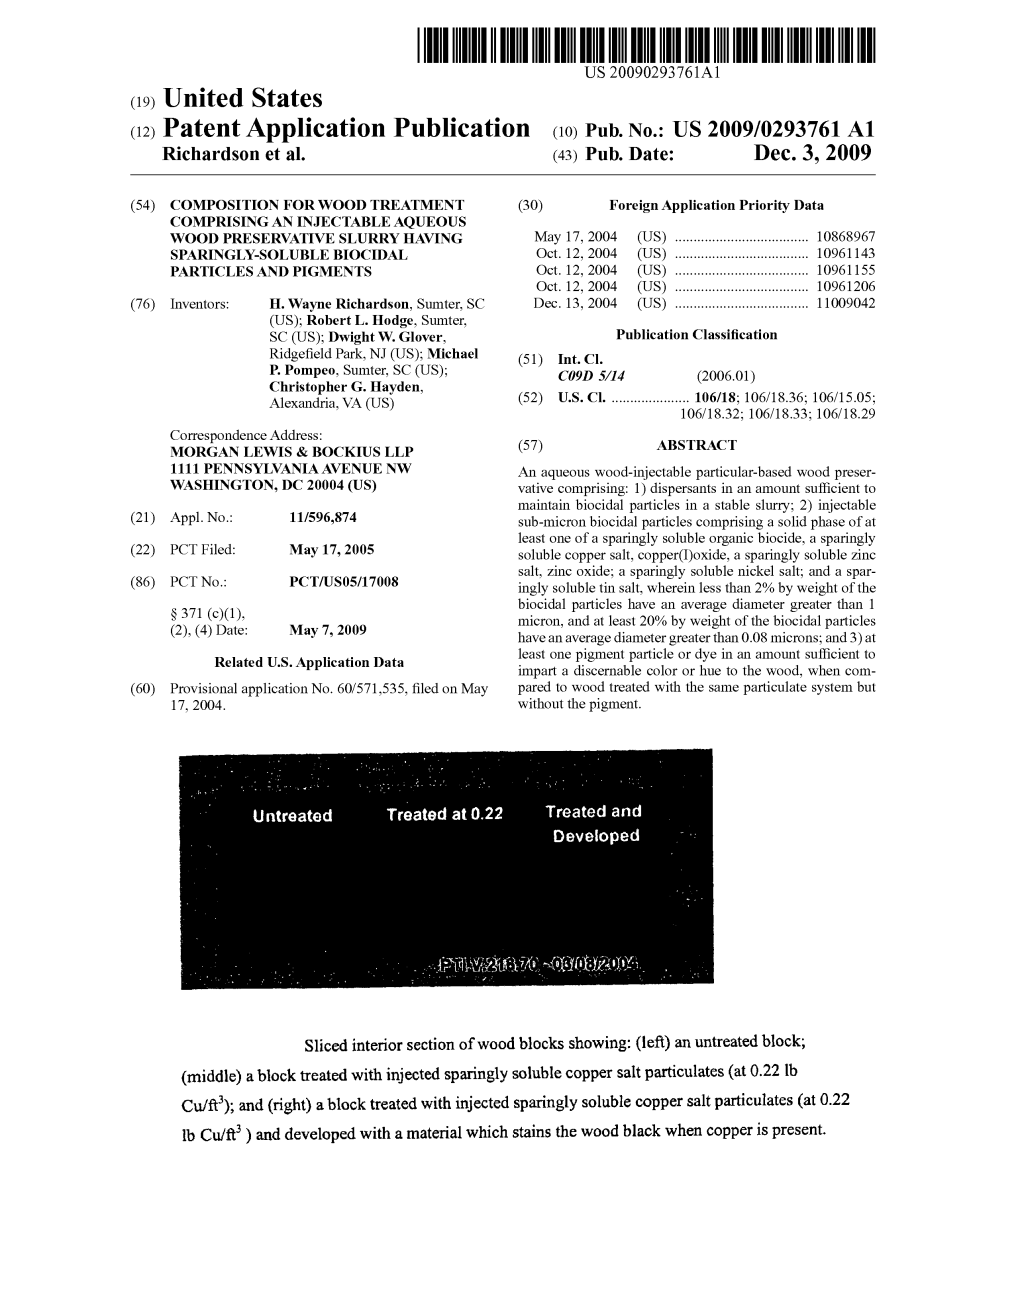 (12) Patent Application Publication (10) Pub. No.: US 2009/0293761 A1 Richards0n Et Al